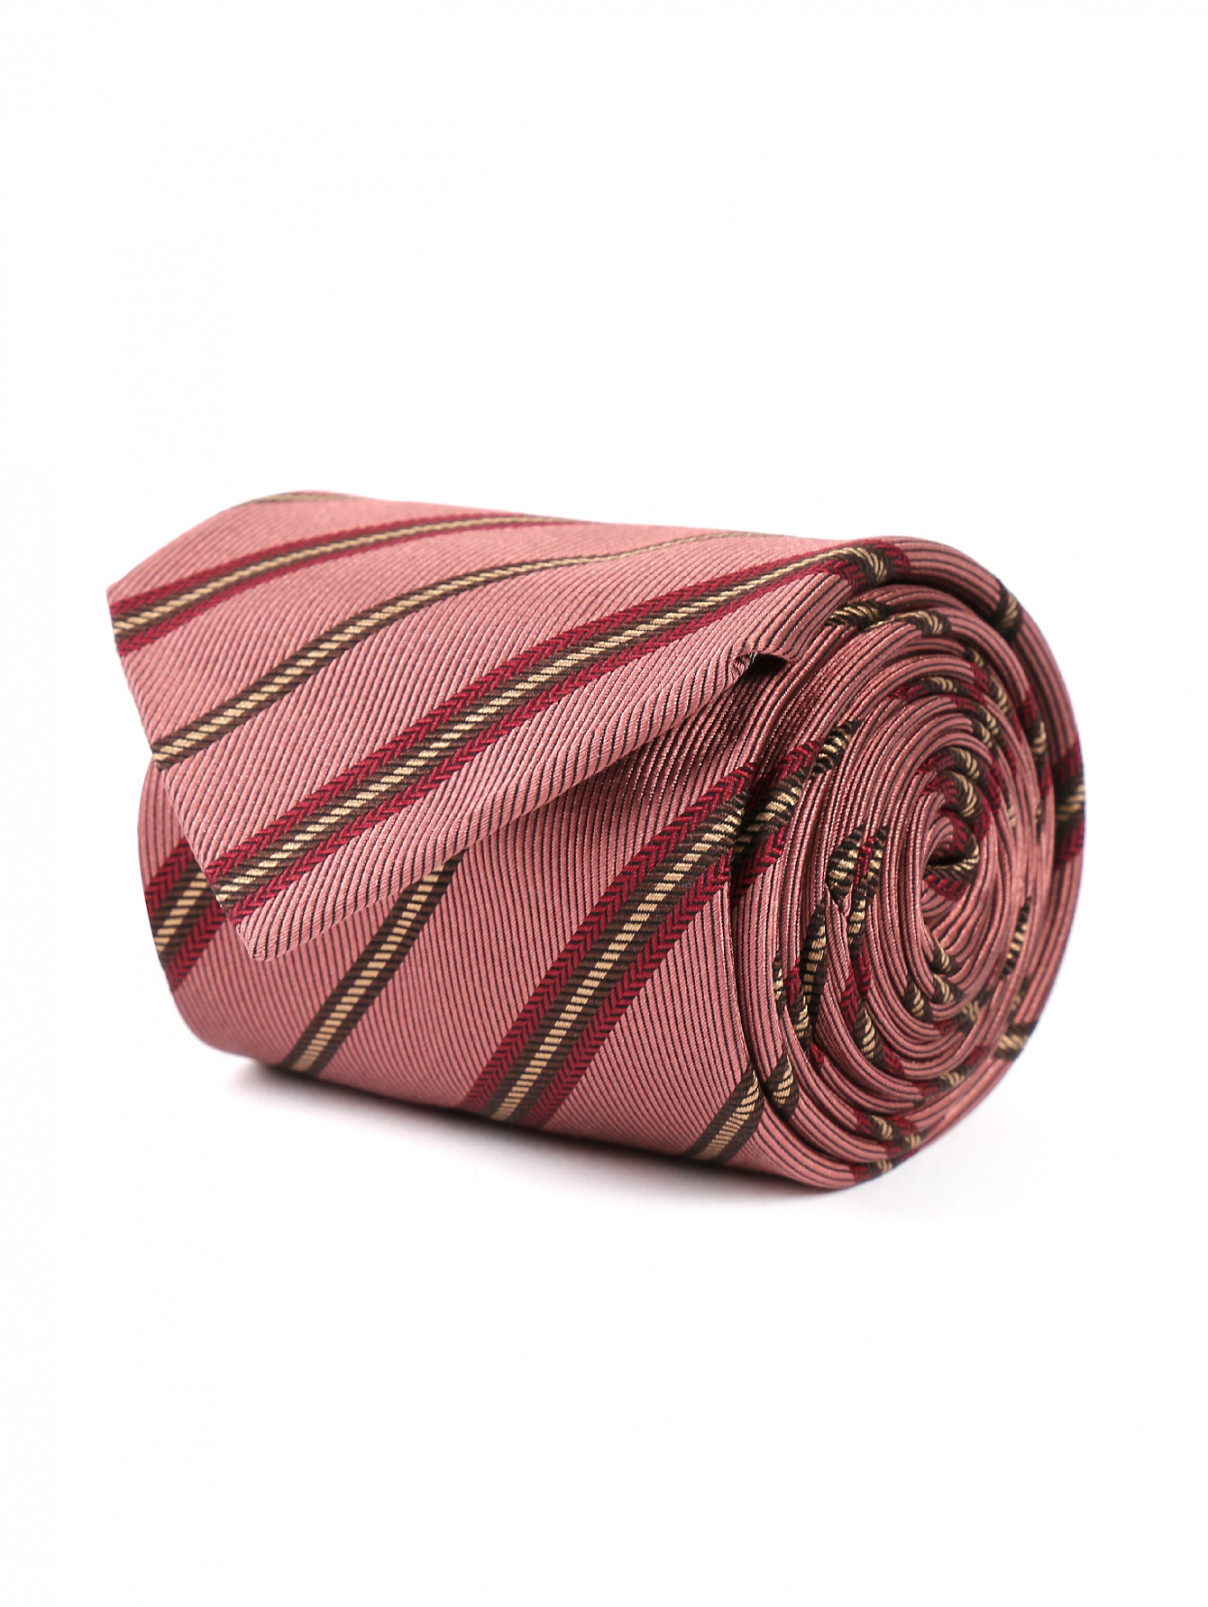 Галстук из шелка с узором полоска Pal Zileri  –  Общий вид  – Цвет:  Красный